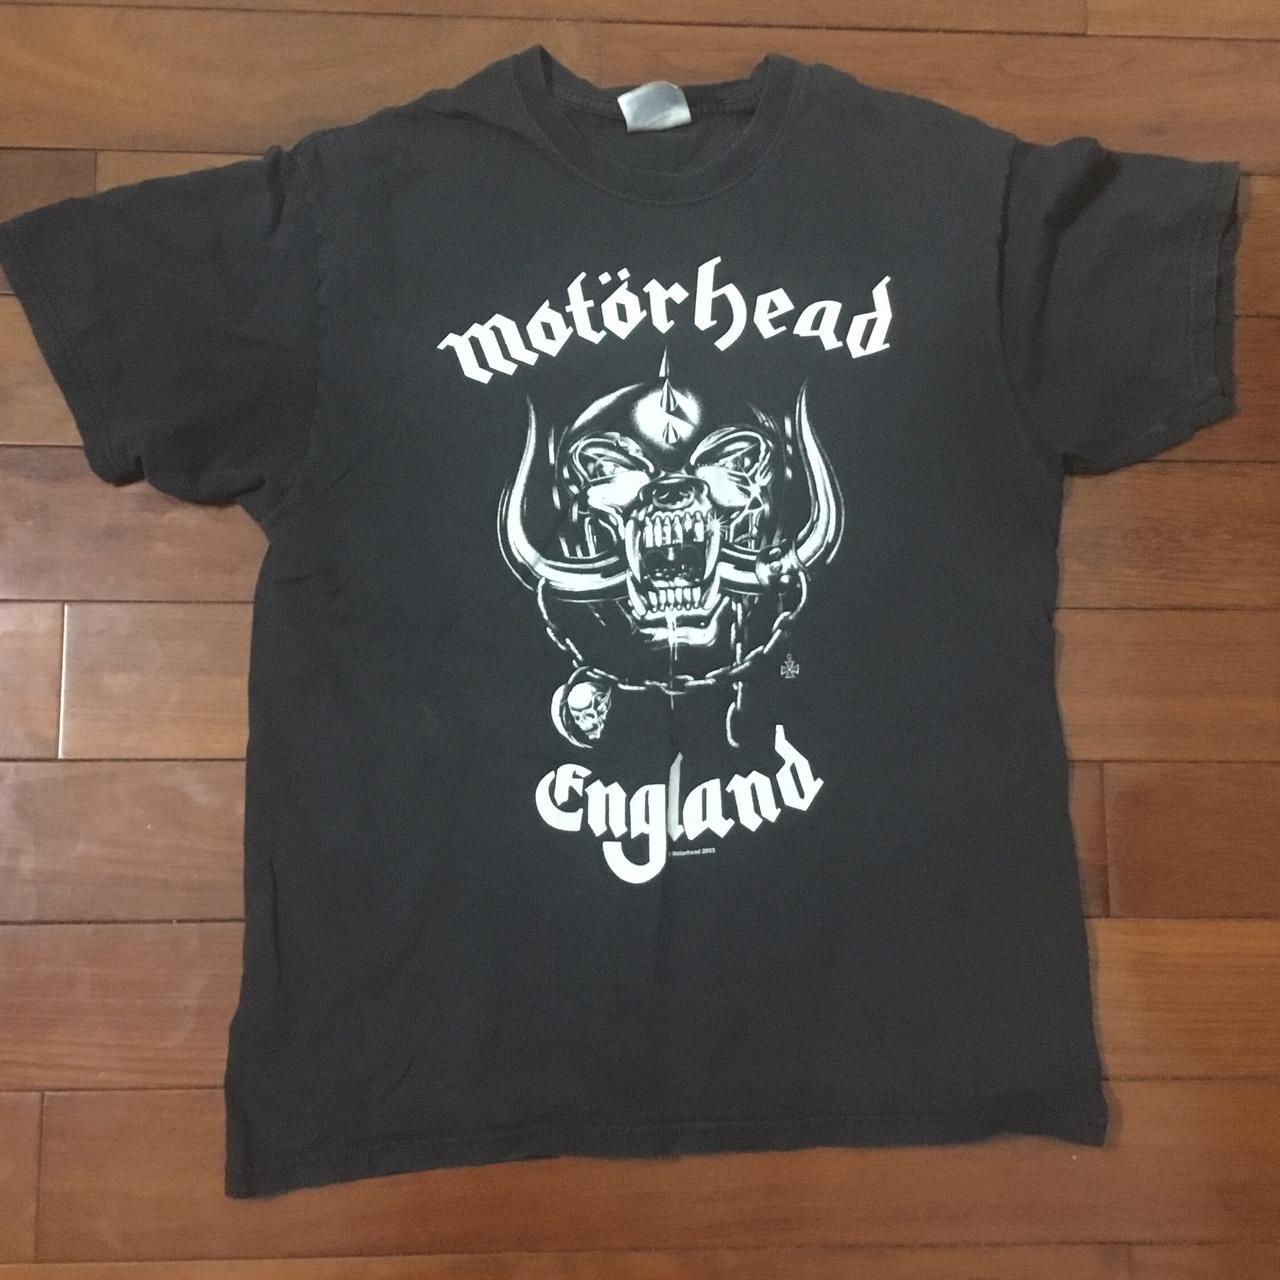 Motorhead metal band shirt so cool omg very grunge... - Depop